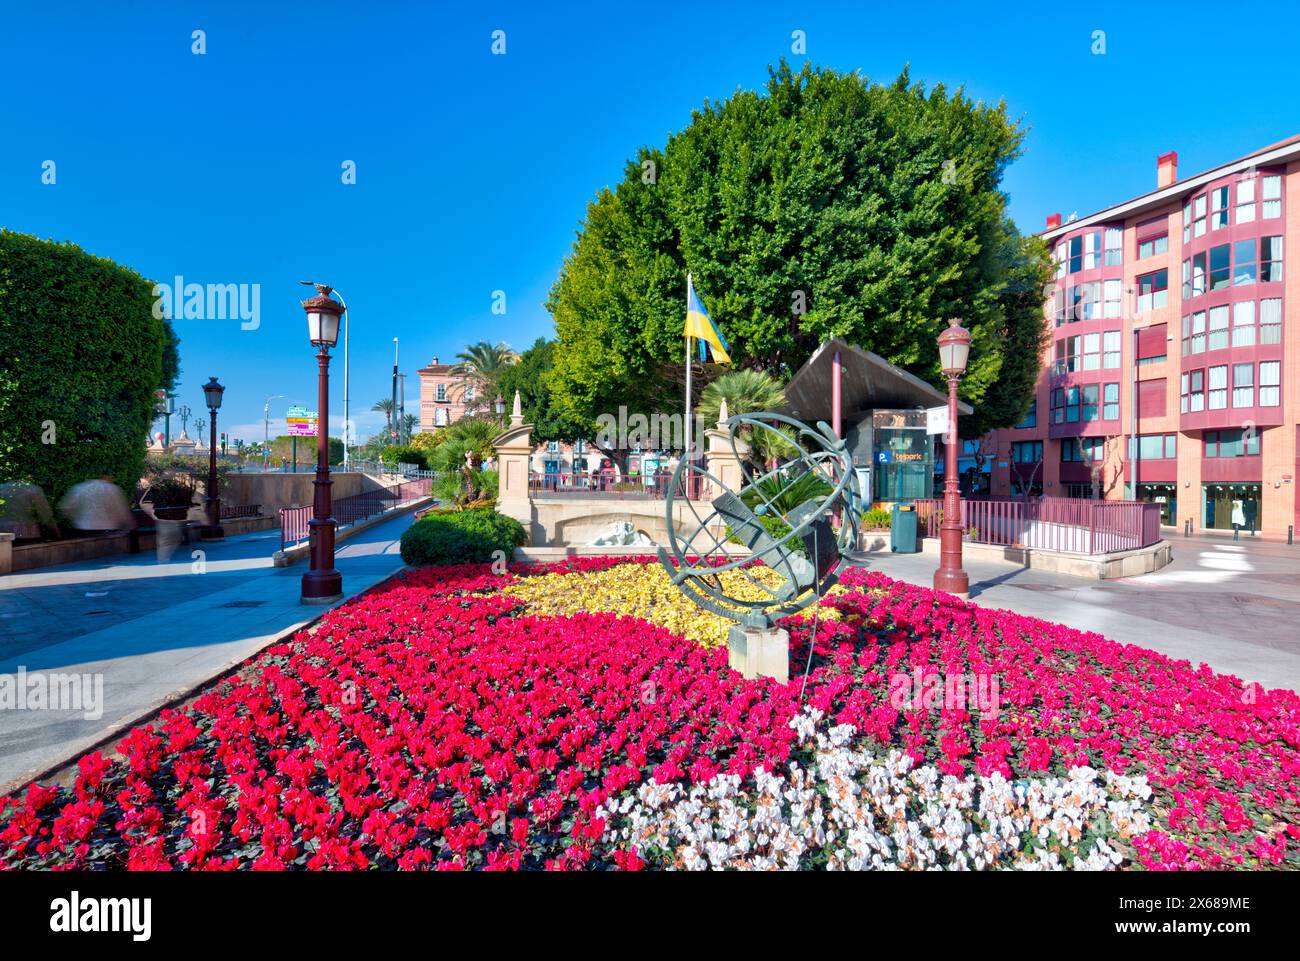 Plaza de la Glorieta, décorations florales, façades de maison, vieille ville, architecture, tour de ville, Murcie, région autonome de Murcie, Espagne, Banque D'Images